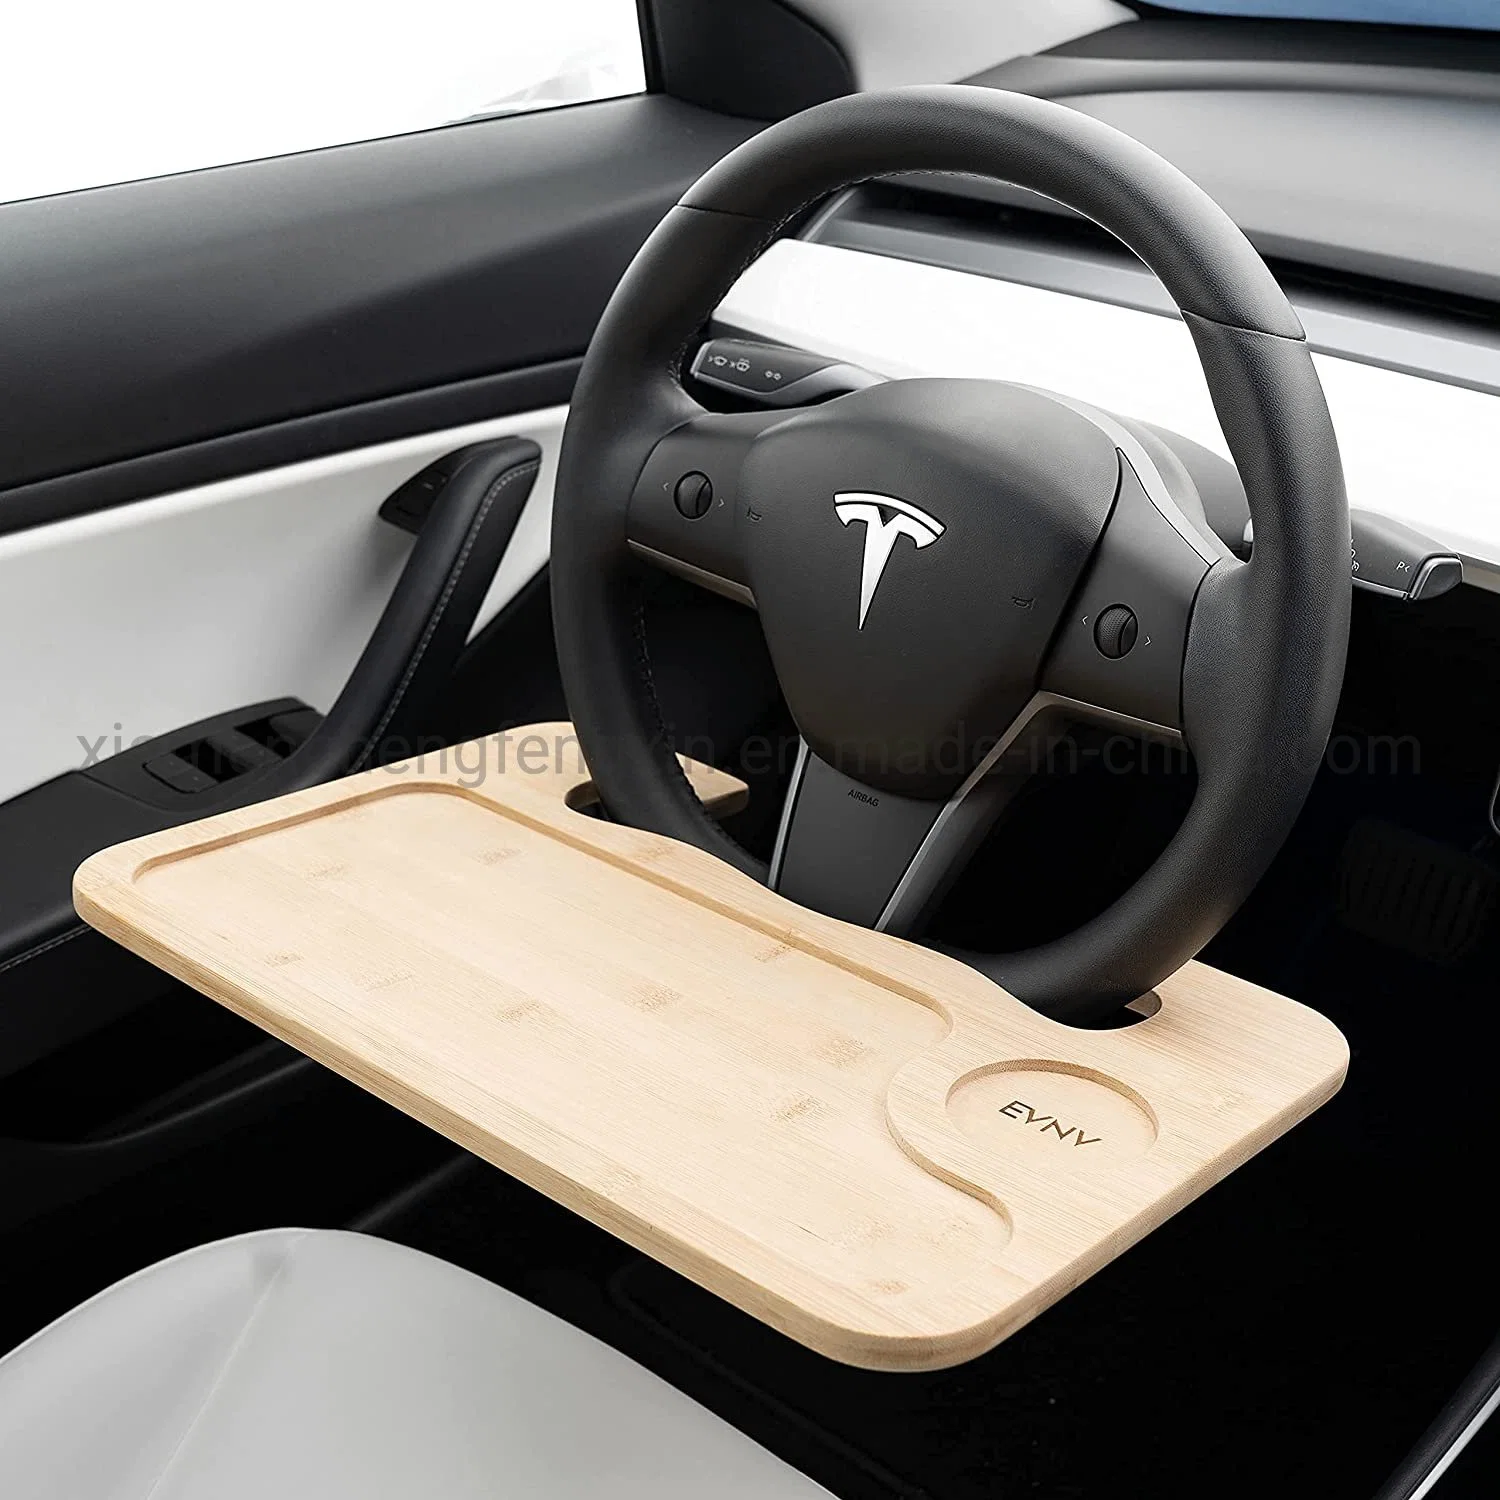 El volante bandeja - Comer cómodamente en tu coche - Coche escritorio portátil para trabajar de forma remota: se adapta a la mayoría de los automóviles, incluyendo el modelo de Tesla